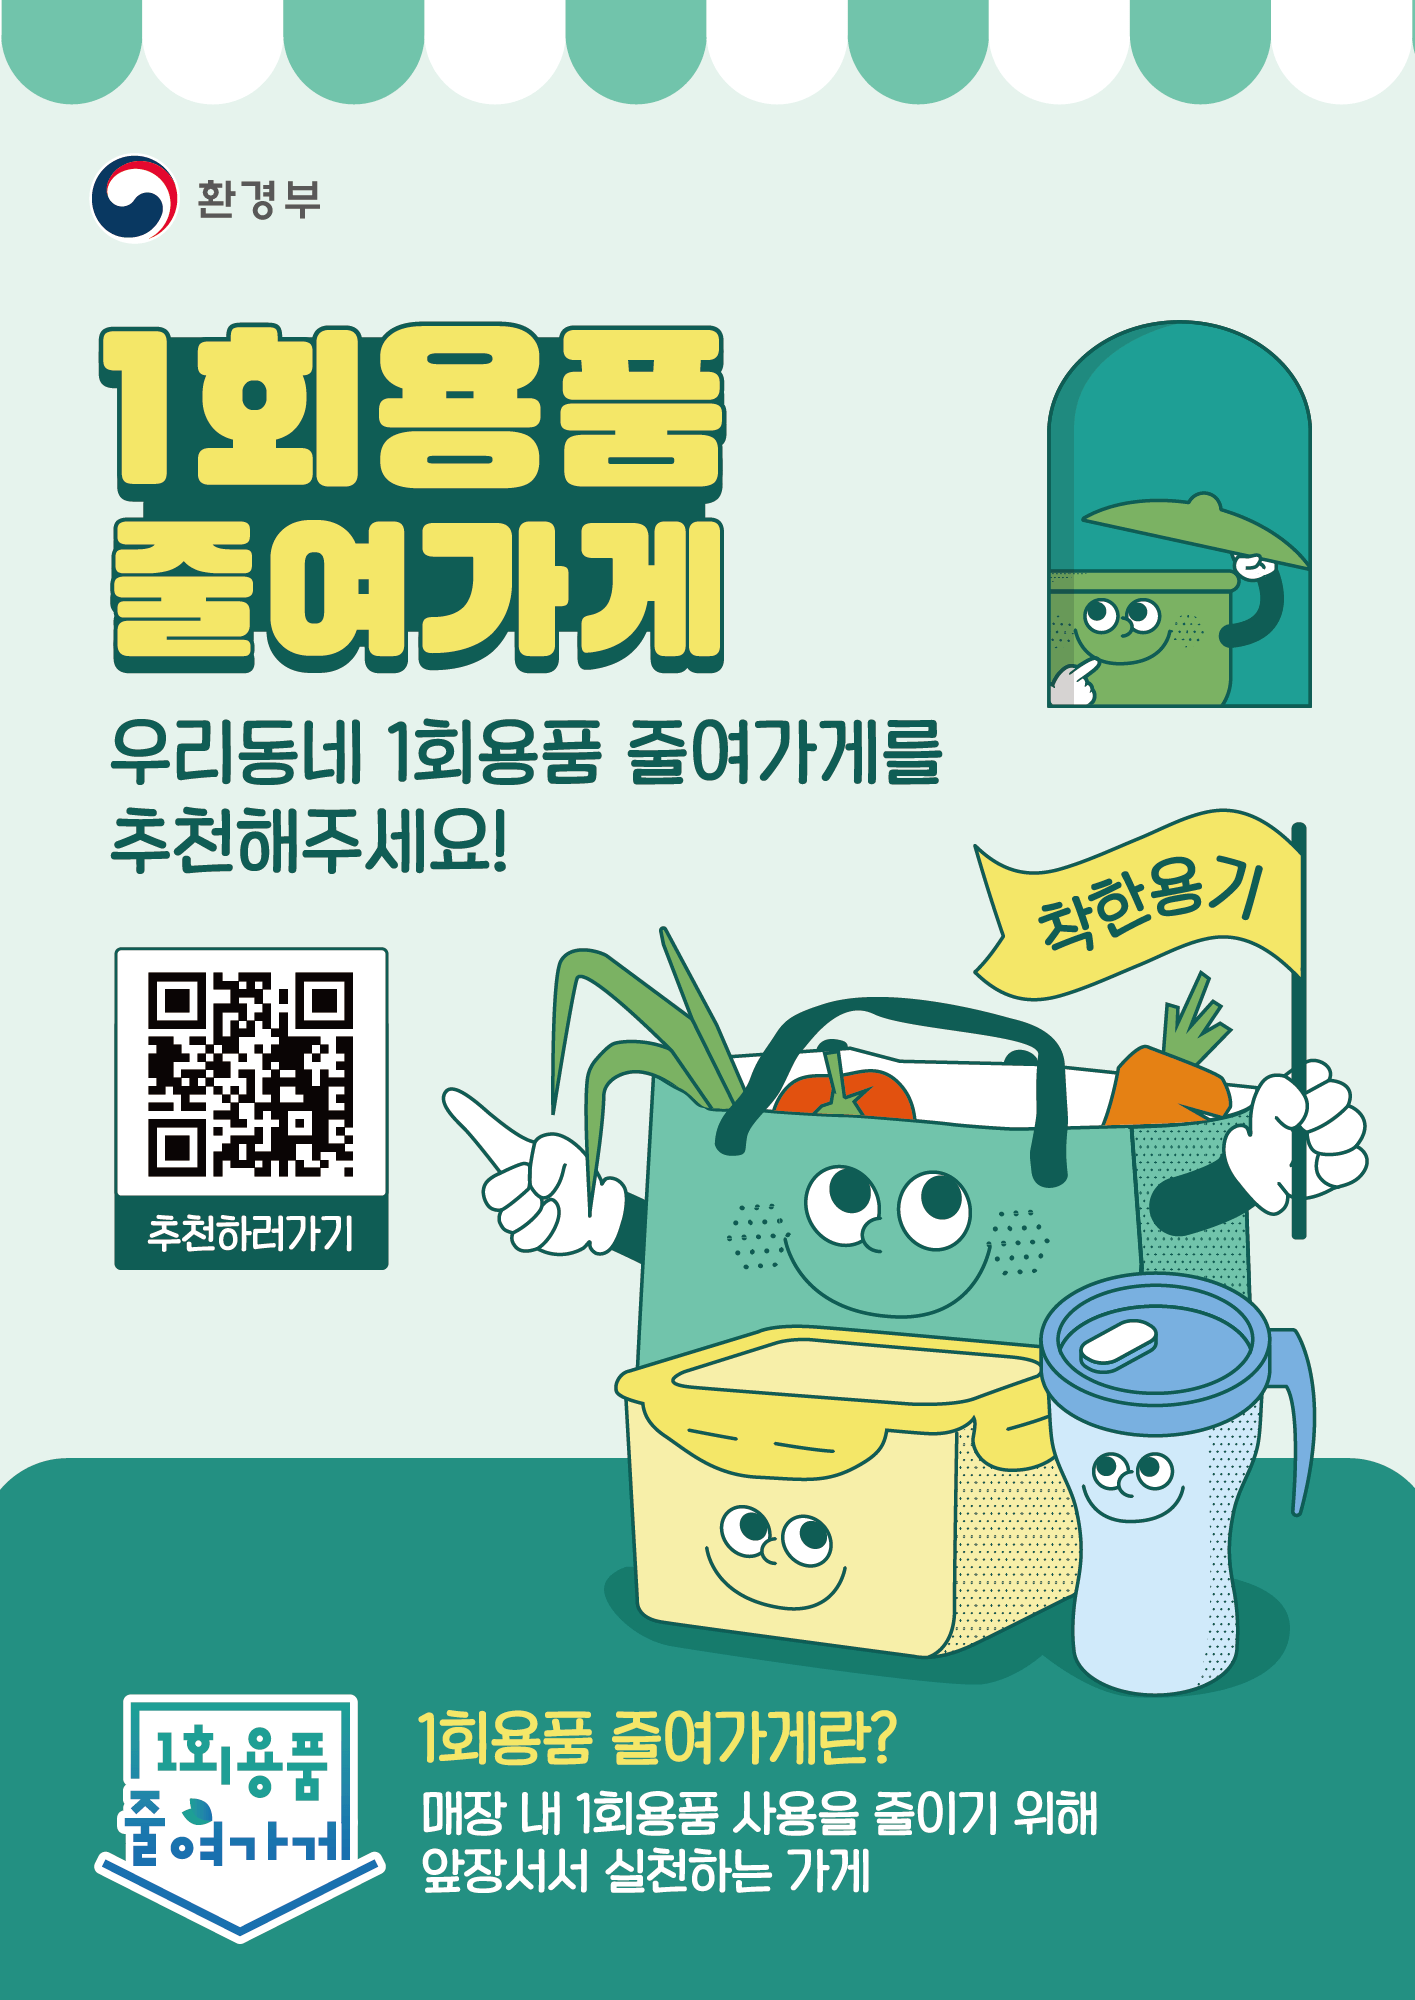 ‘1회용품 줄여가게’ 찾기 캠페인 안내 첨부#1